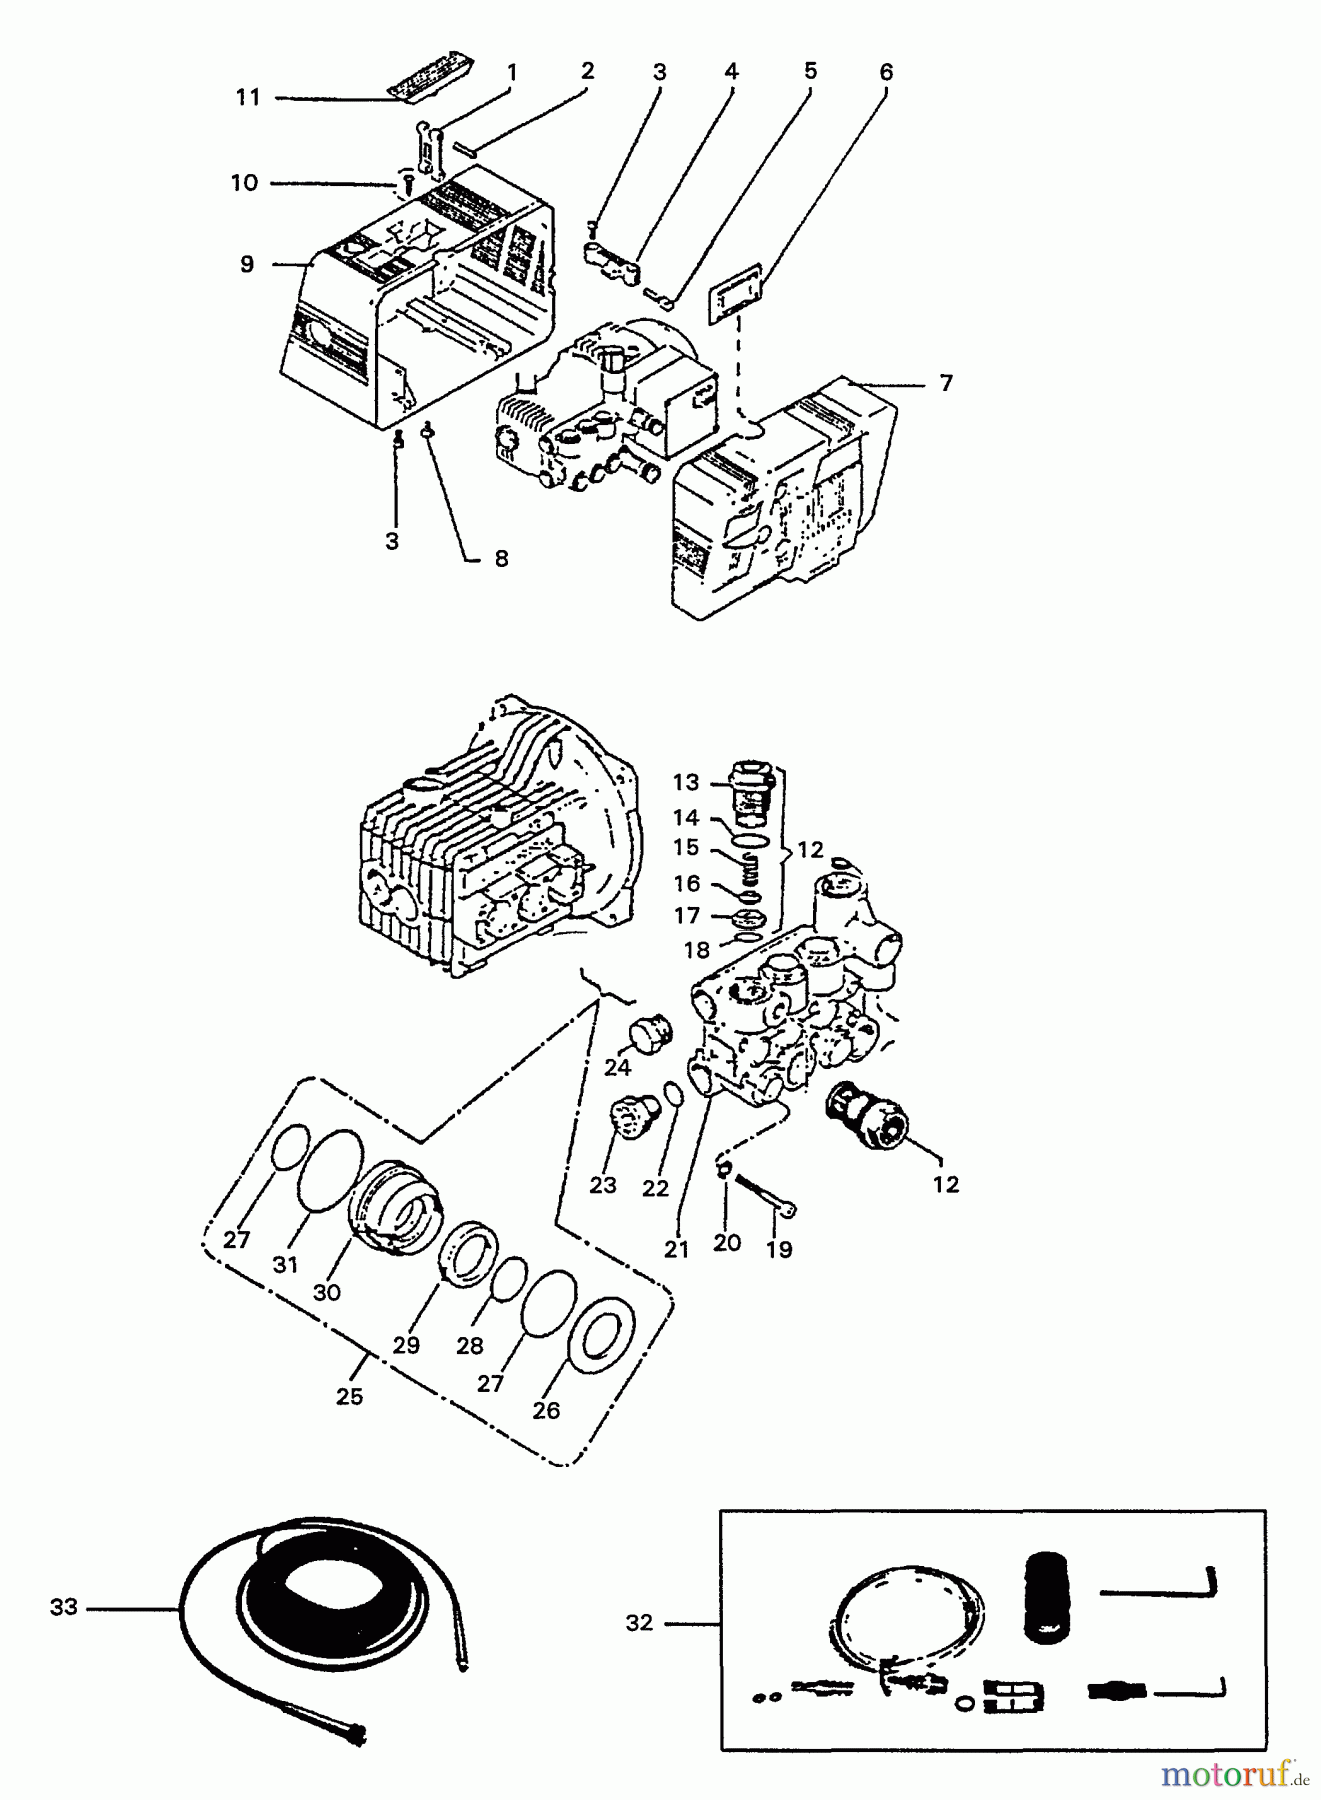  Echo Hochdruckreiniger HPP-1890 - Echo Pressure Washer, S/N: 2457 - 2912 (1992 Models) Seals, Valves, Motor Housing, Hose, Accessories